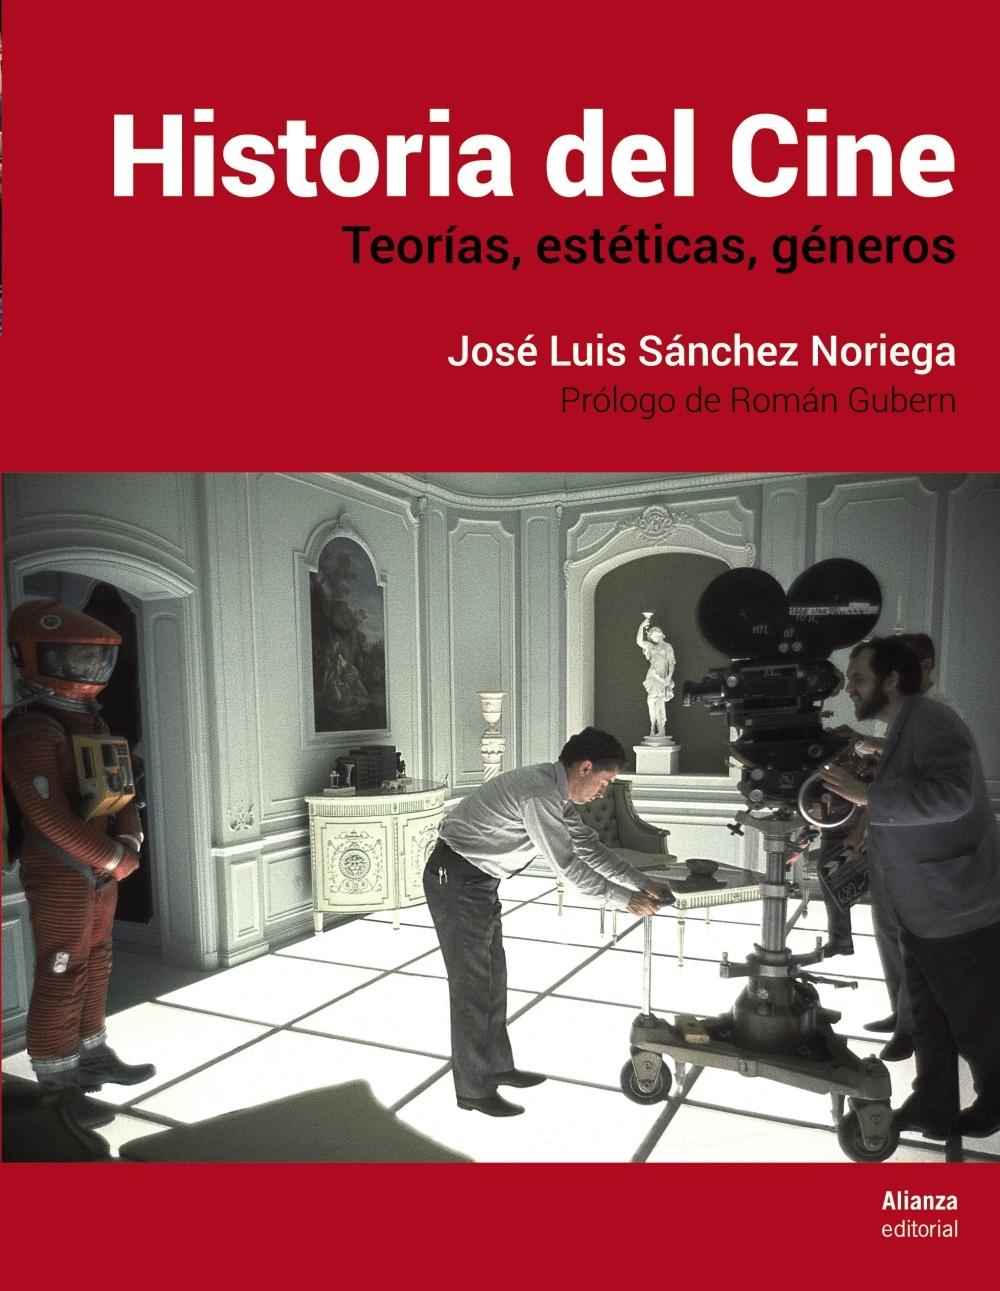 Historia del cine, de José Luis Sánchez Noriega